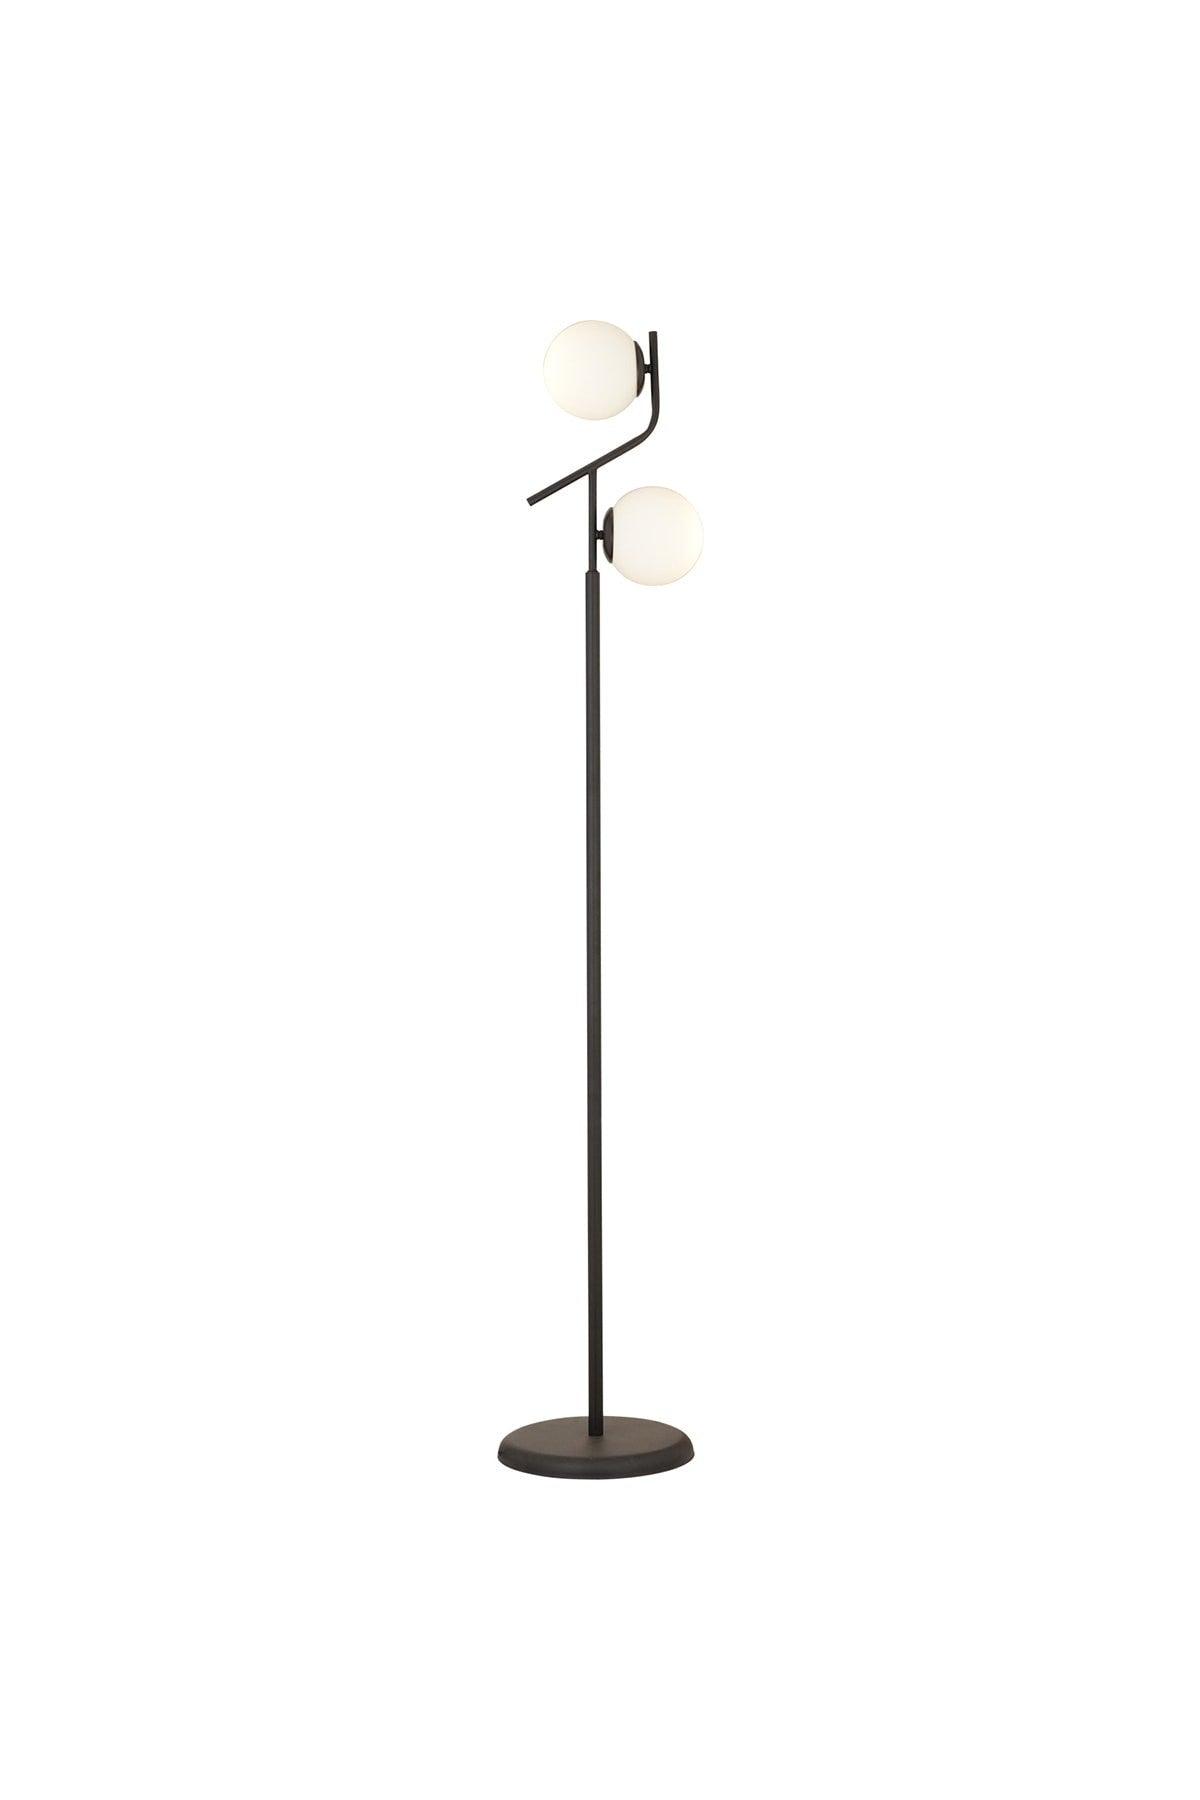 Velar Modern Design Metal Floor Lamp with Black and White Glass - Swordslife